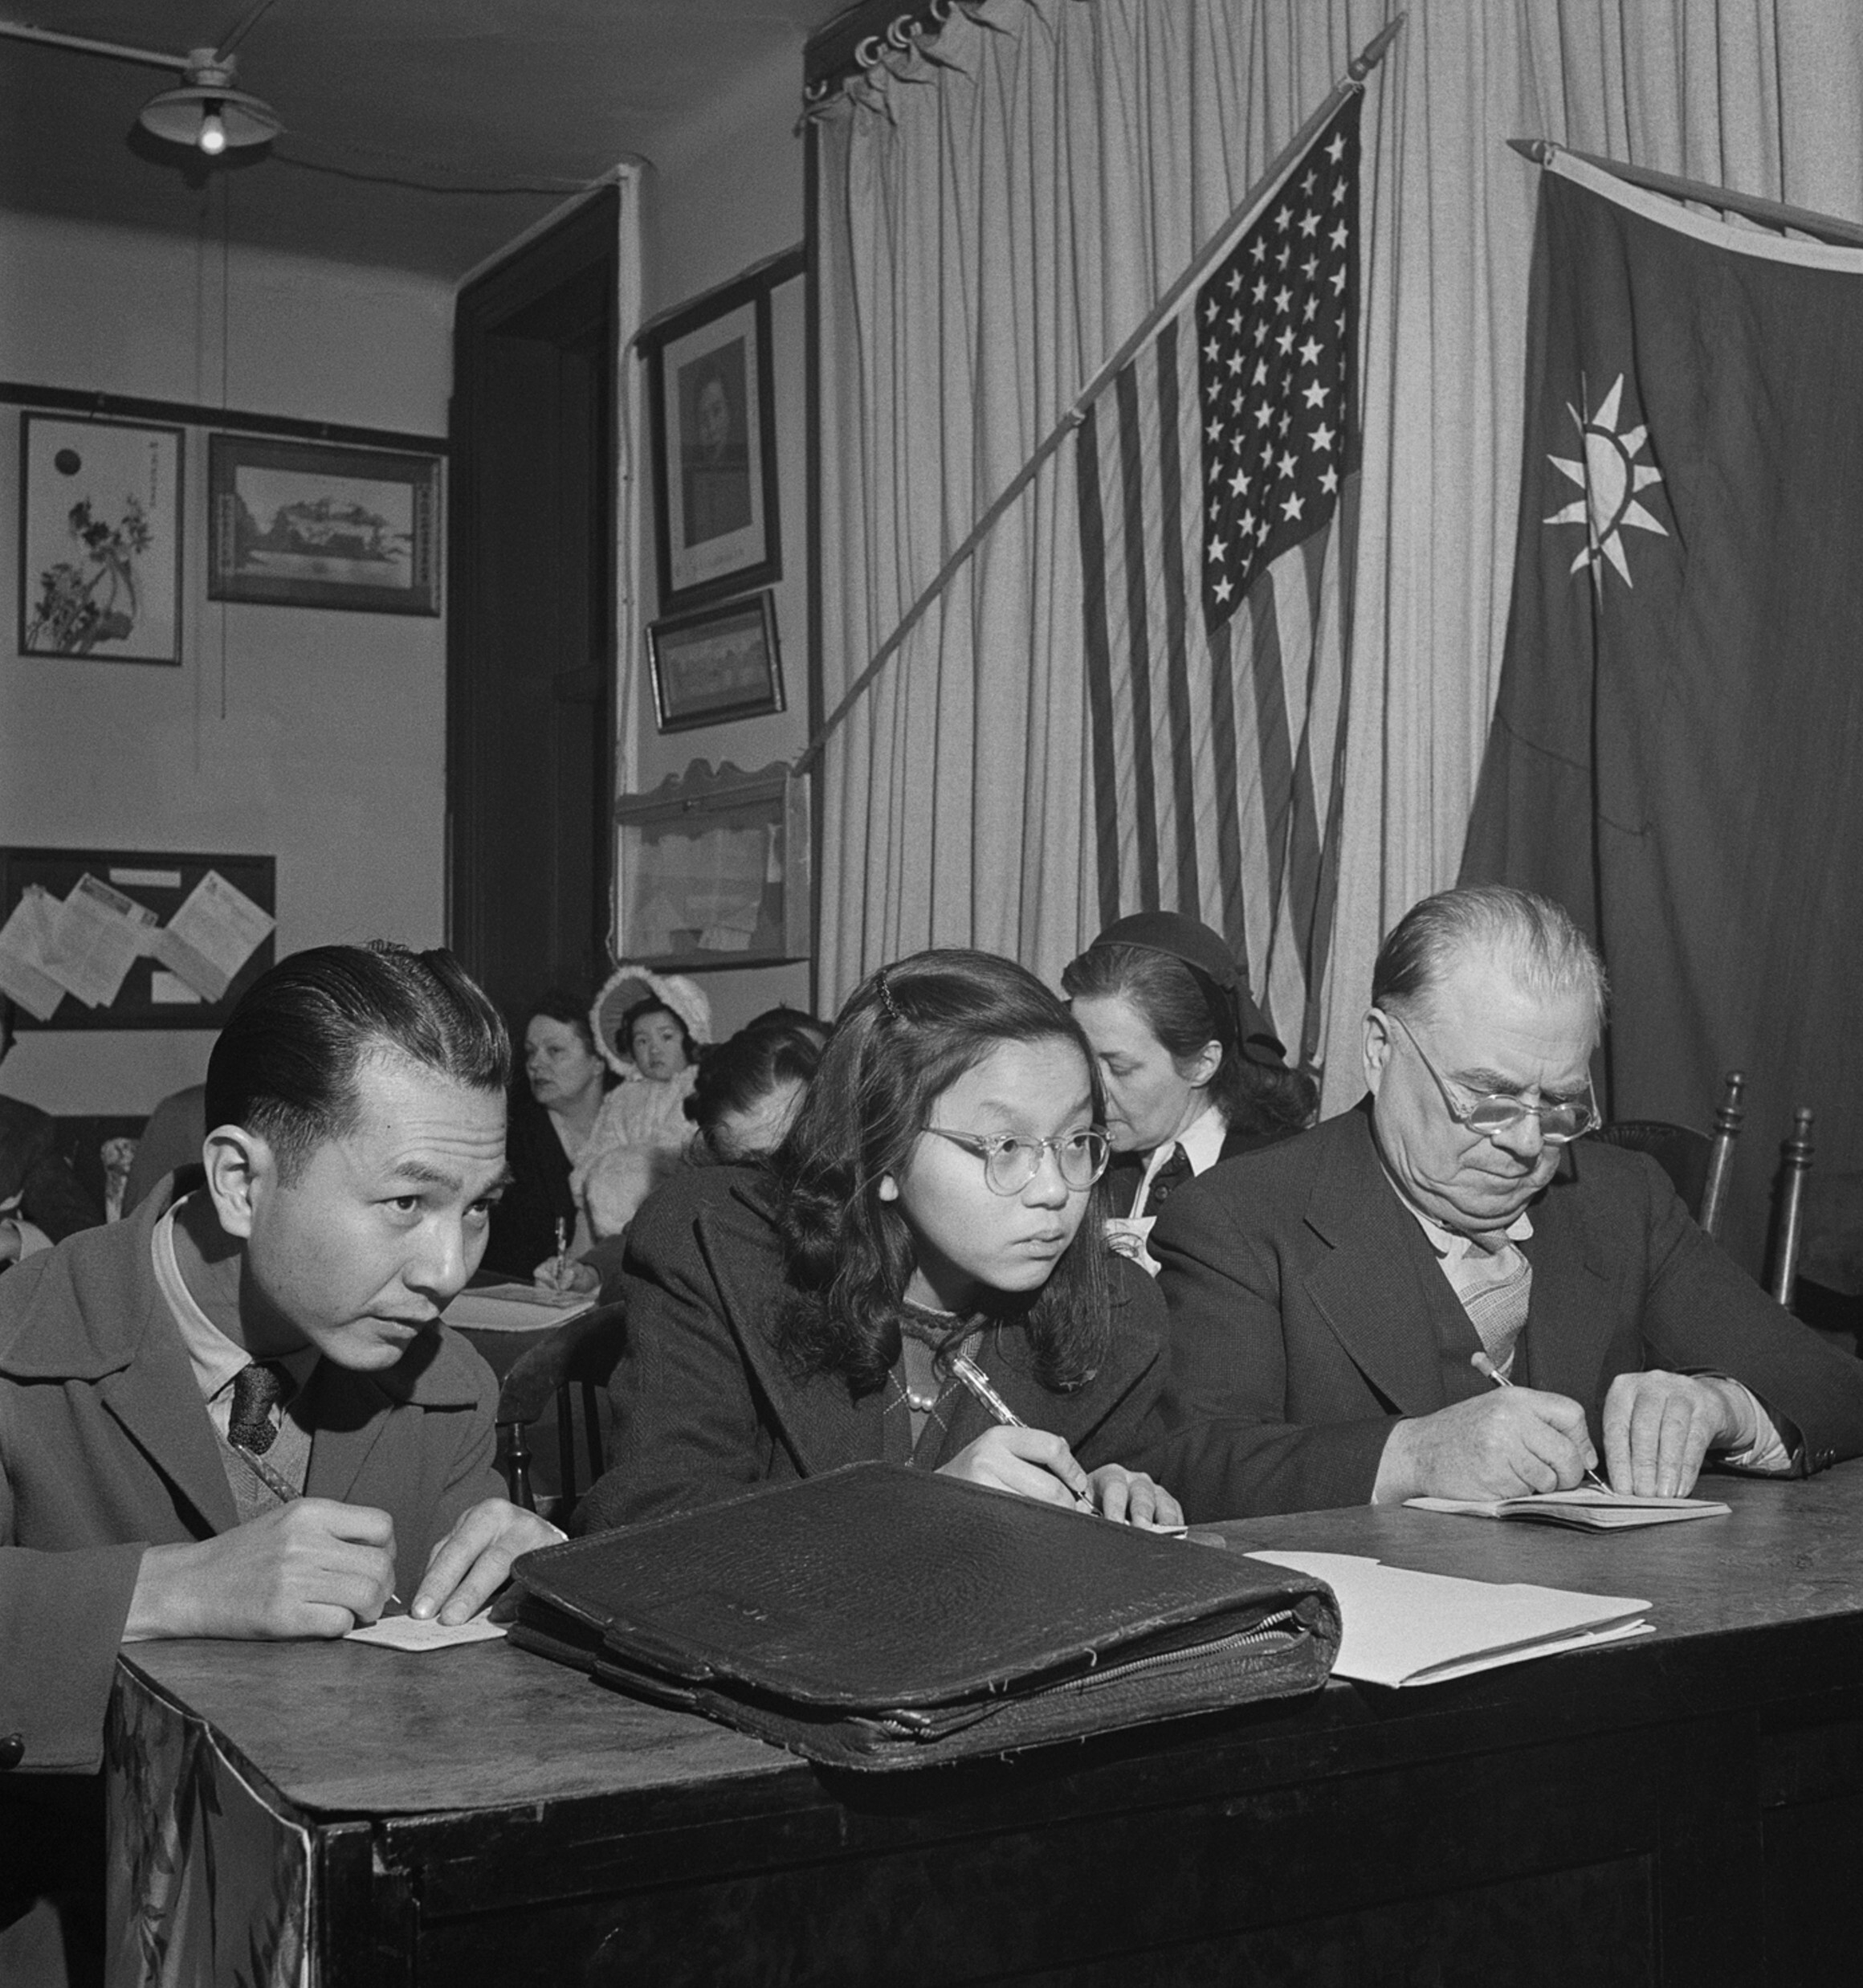 Студентки делают заметки на уроке китайского языка, офис Американской женской волонтерской службы — Движение китайских женщин за новую жизнь, Чайнатаун, Нью-Йорк, 1943-44 гг. Фотограф Роман Вишняк